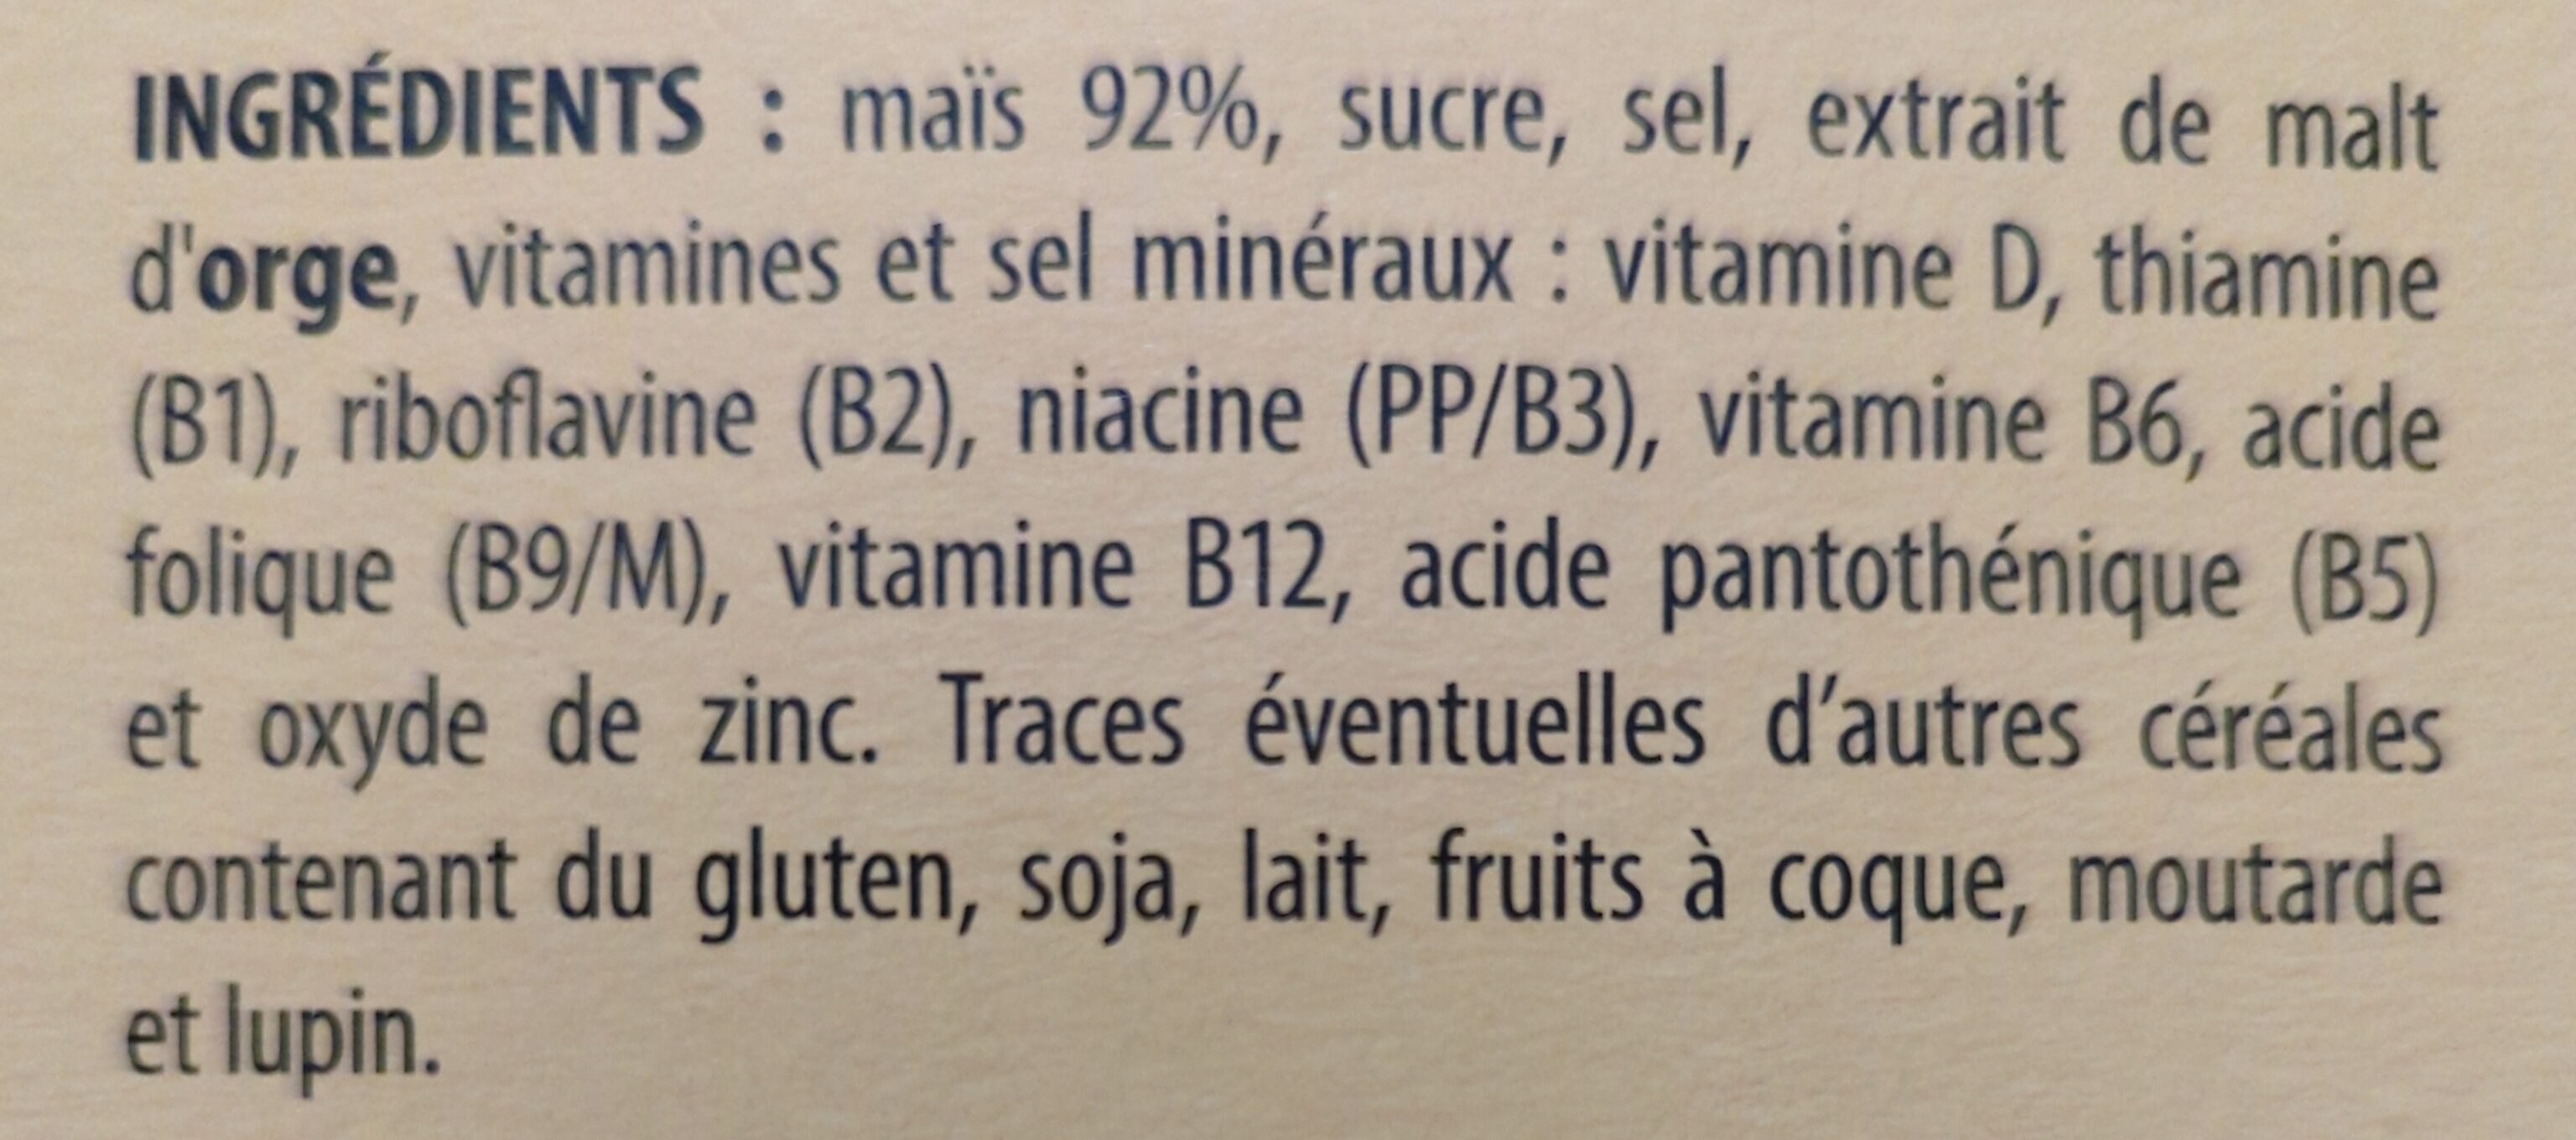 Corn flakes - Ingredients - fr